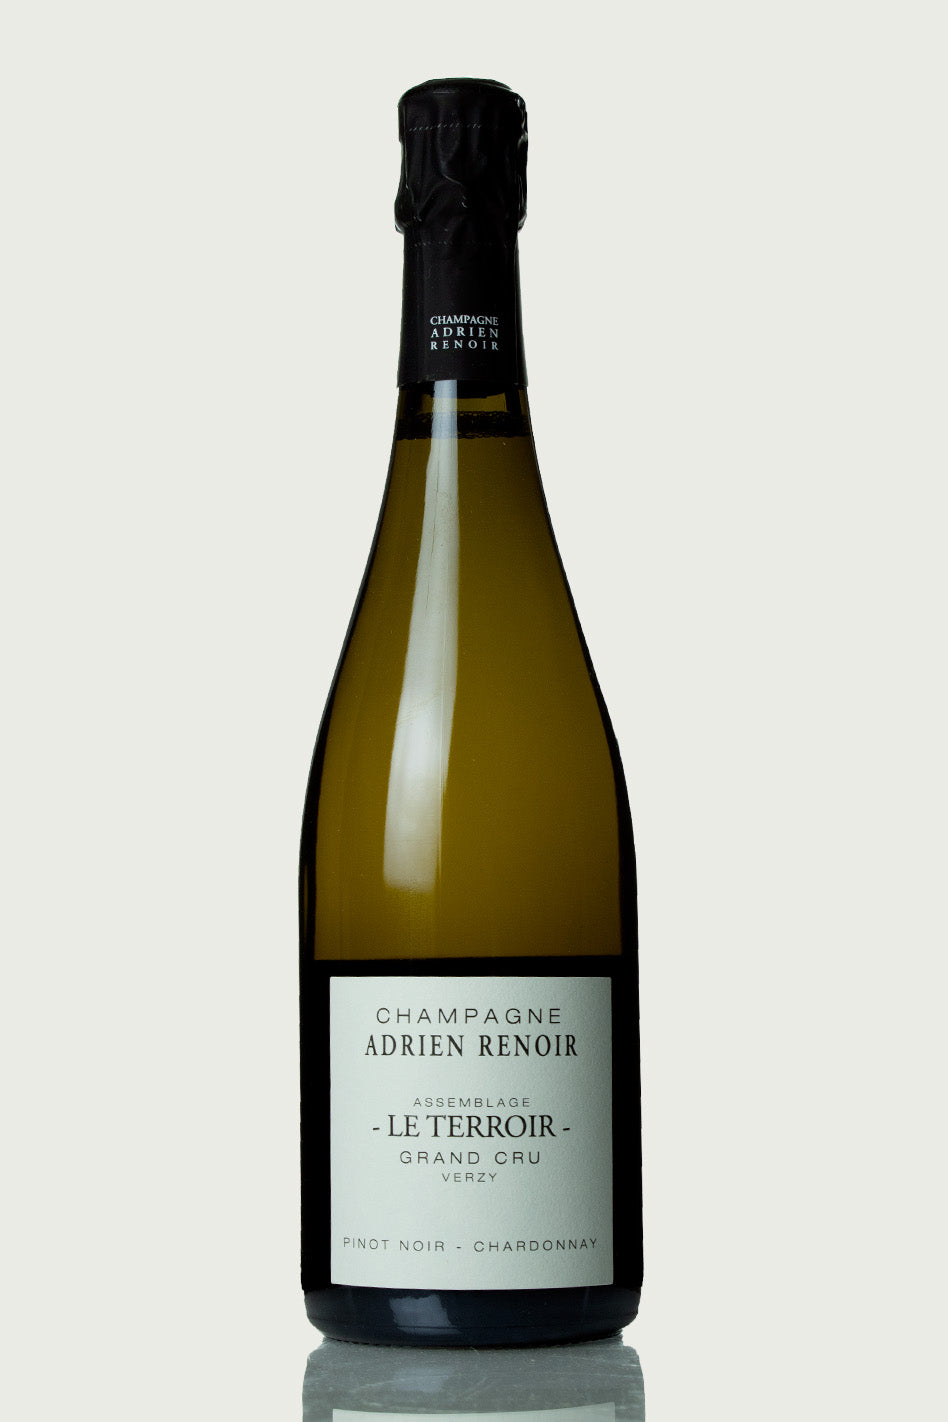 Adrien Renoir Champagne Grand Cru 'Le Terroir' Magnum NV